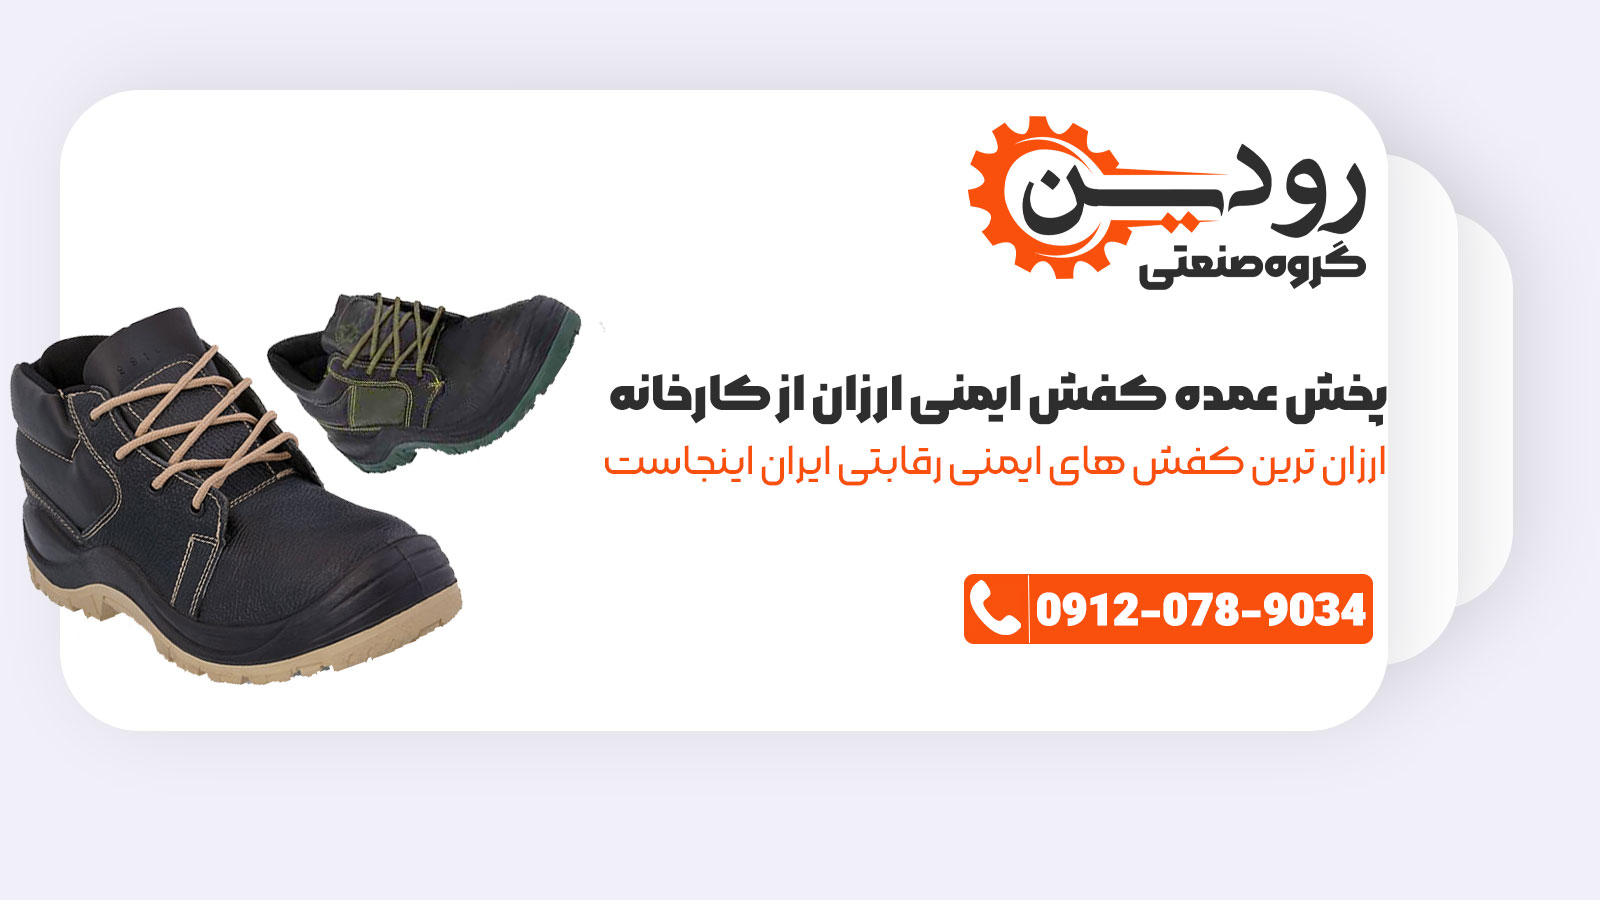 مرکز پخش کفش ایمنی میتواند با قیمت ارزان و حتی زیر قیمت کارخانه به شما اجناس را ارائه دهد.